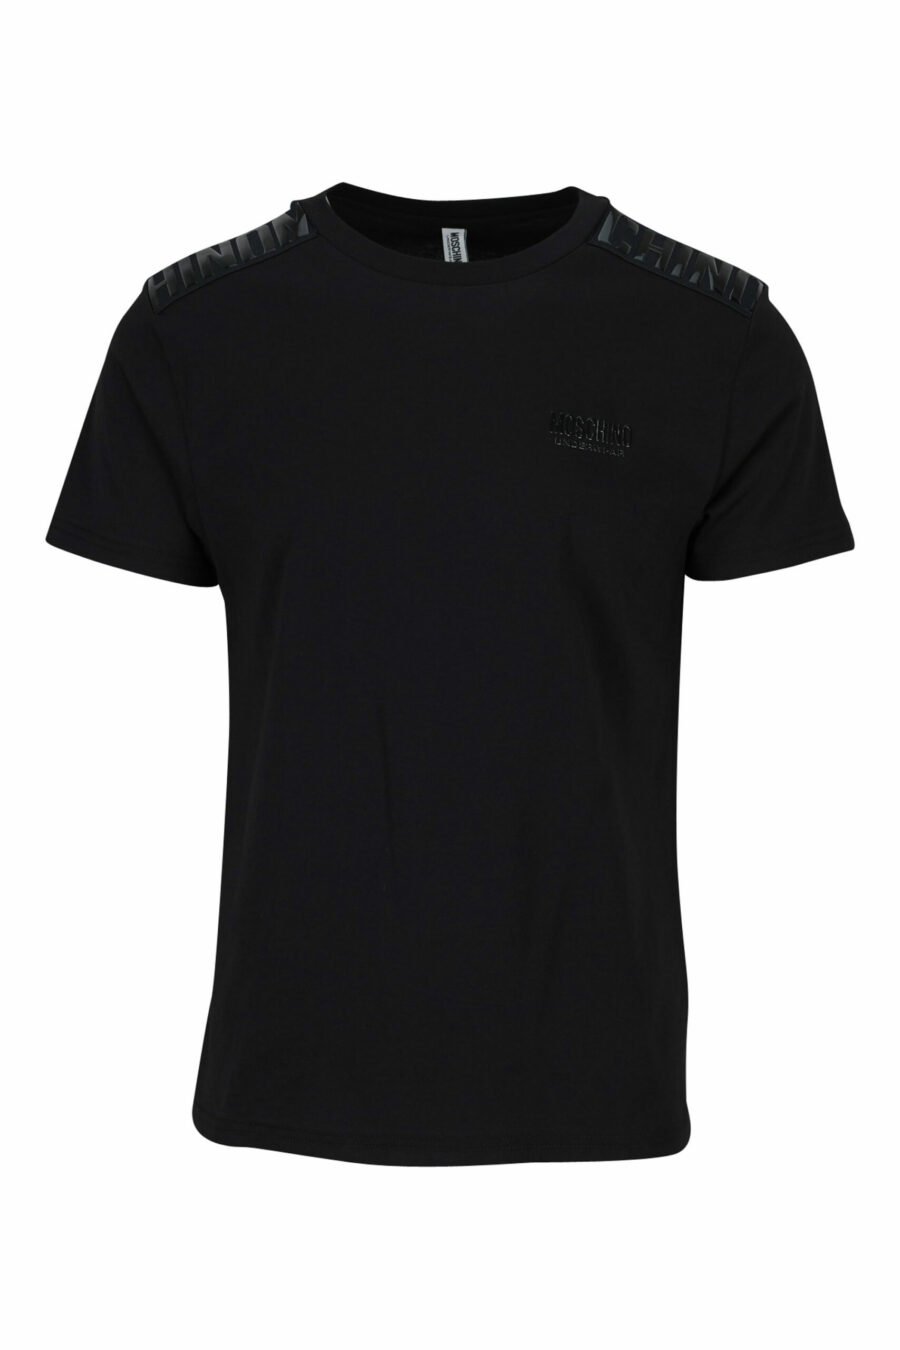 Camiseta negra con logo monocromático en cinta en hombros - 889316992724 scaled